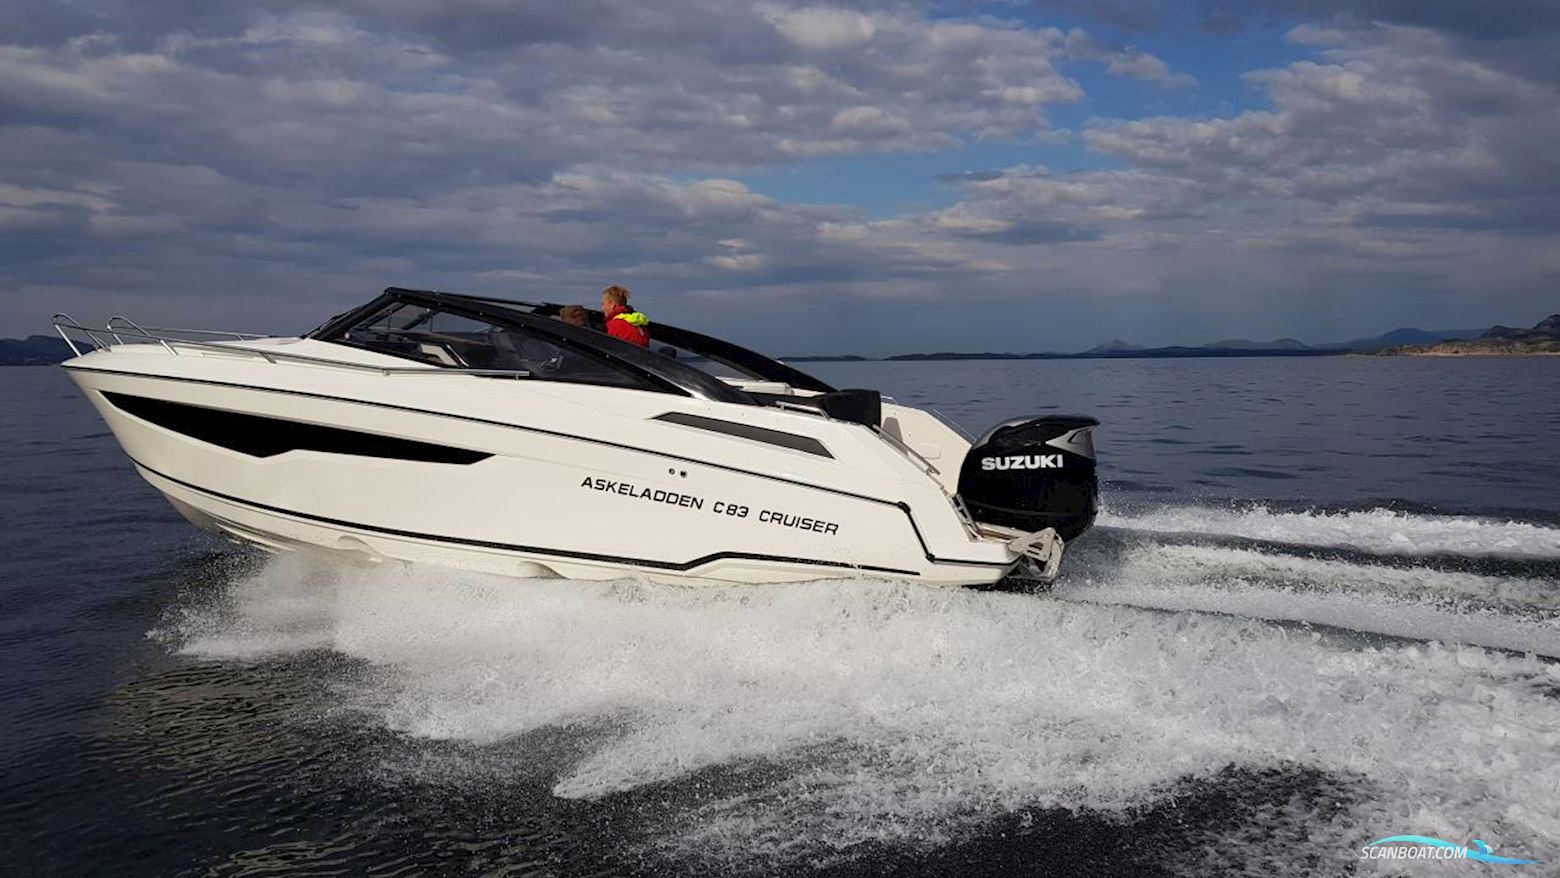 Askeladden C83 Cruiser Tsi Motor boat 2023, with Suzuki engine, Sweden